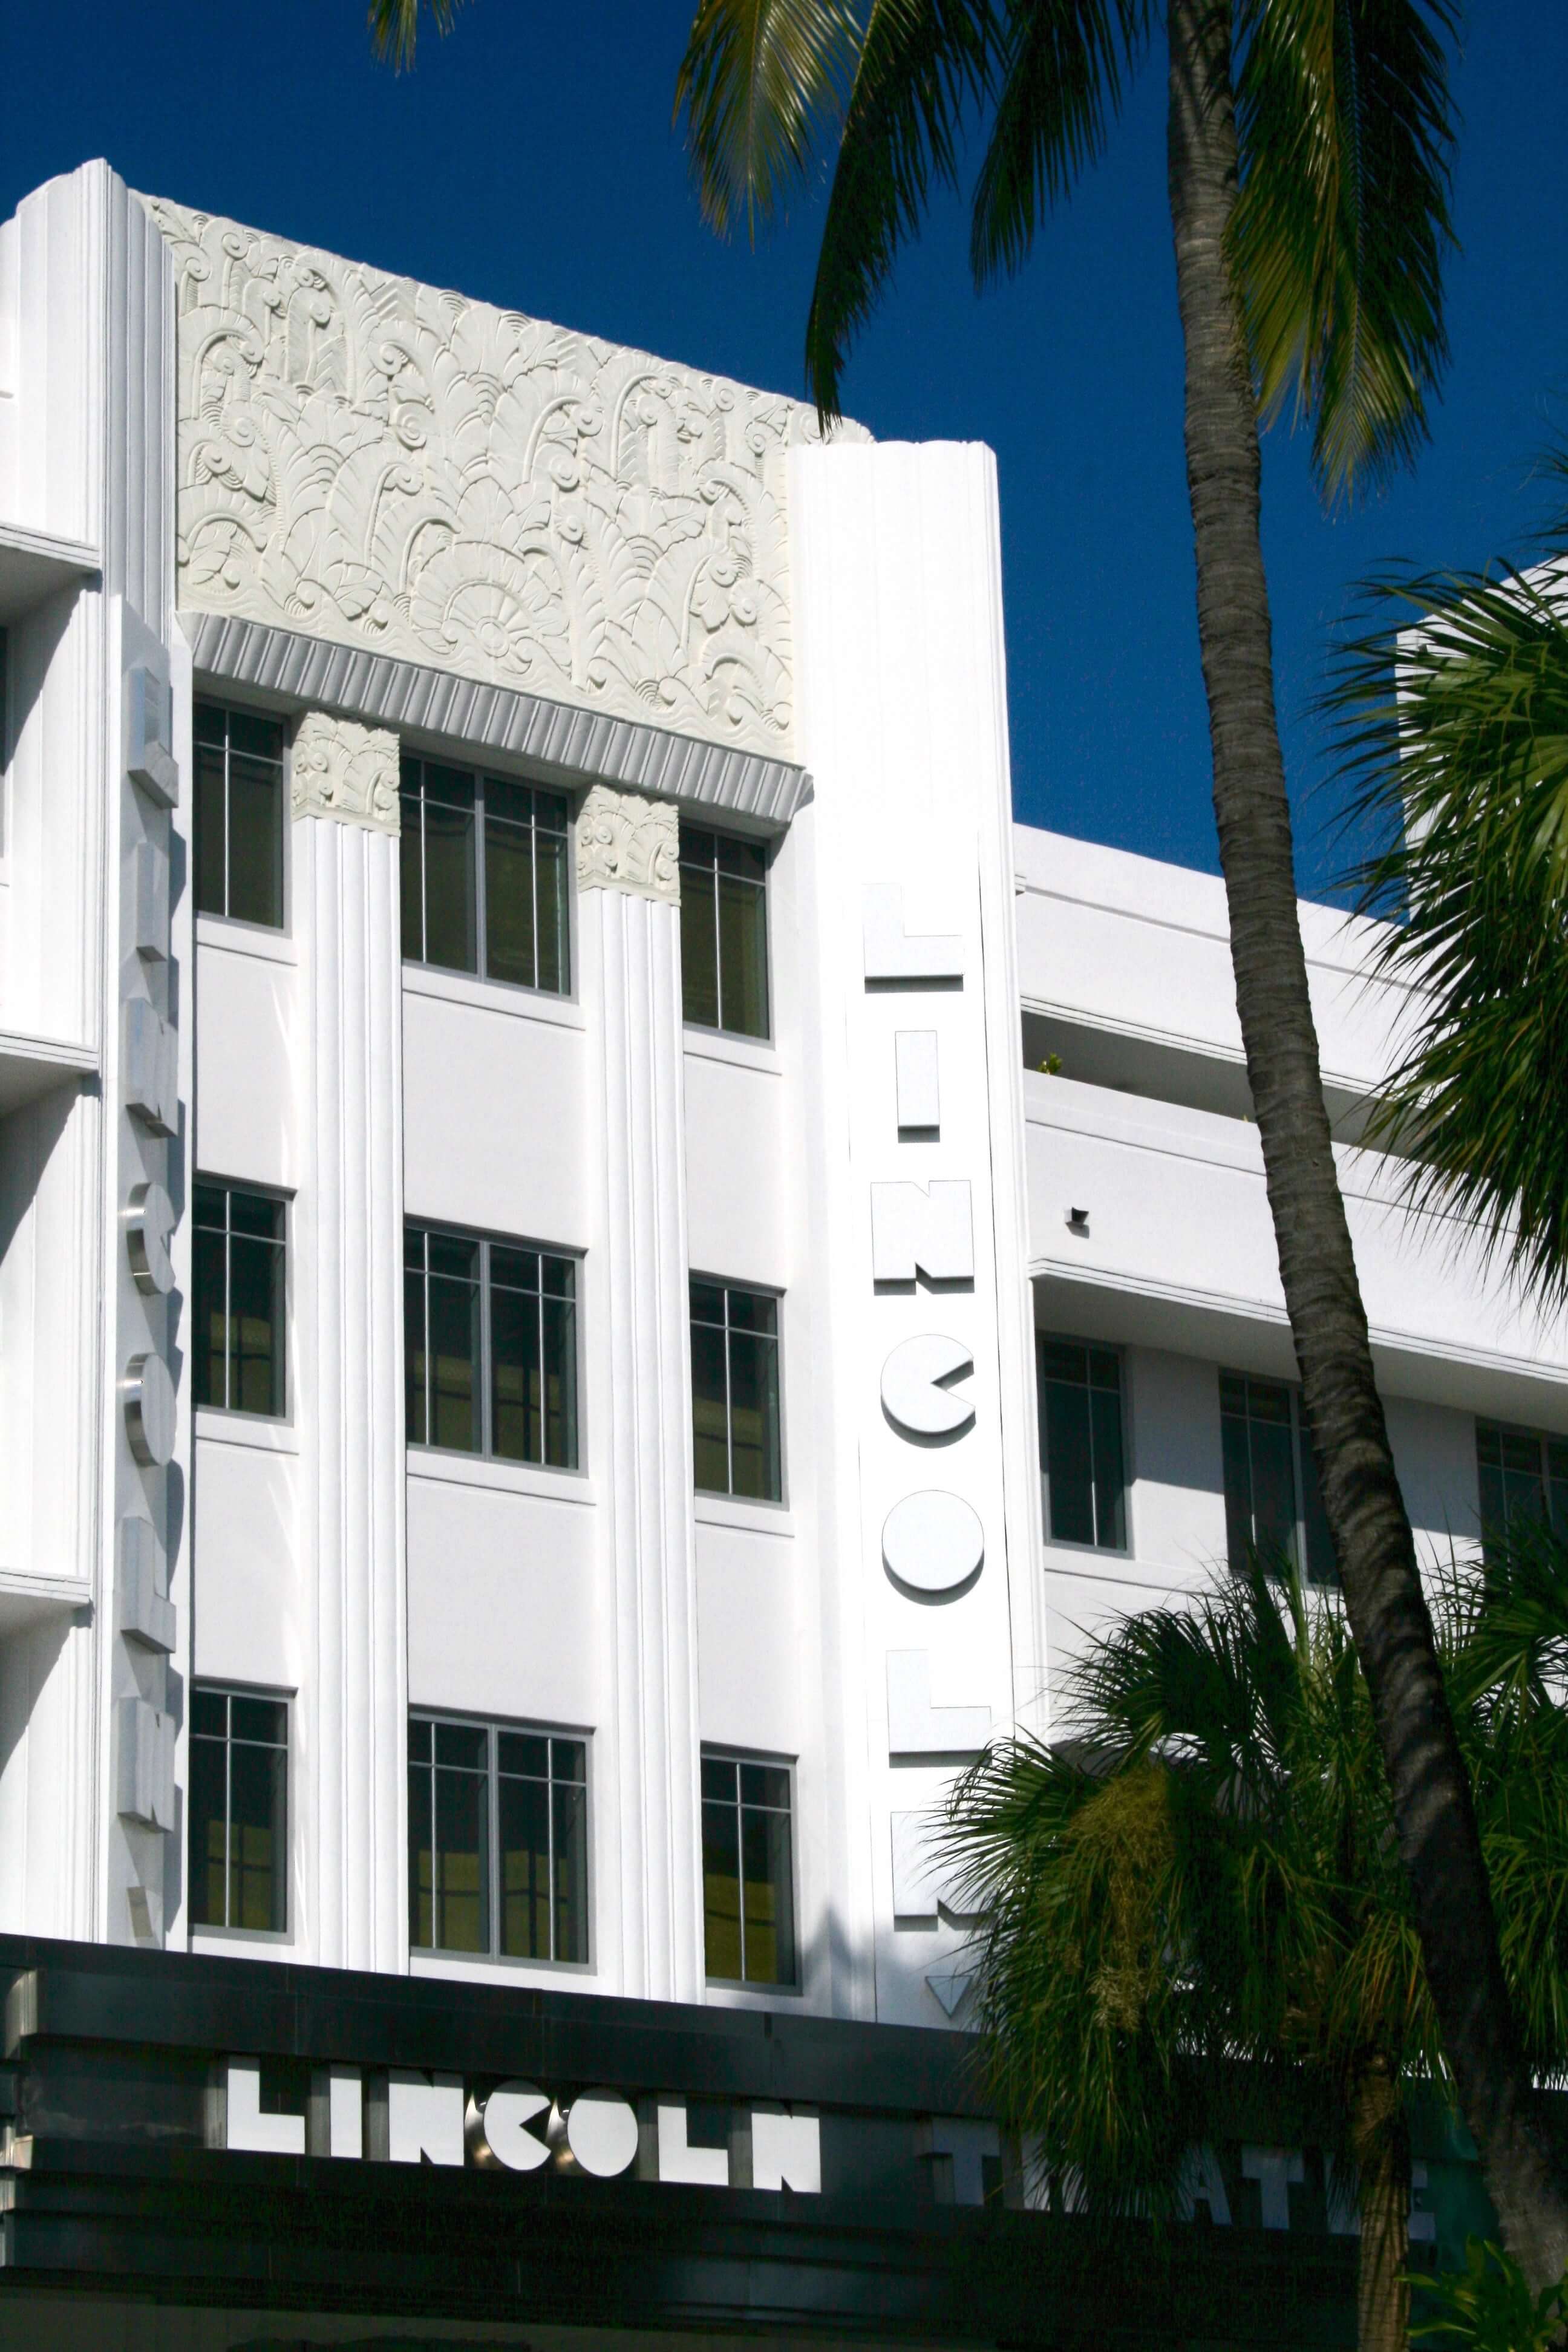 Miami Art Deco Architecture